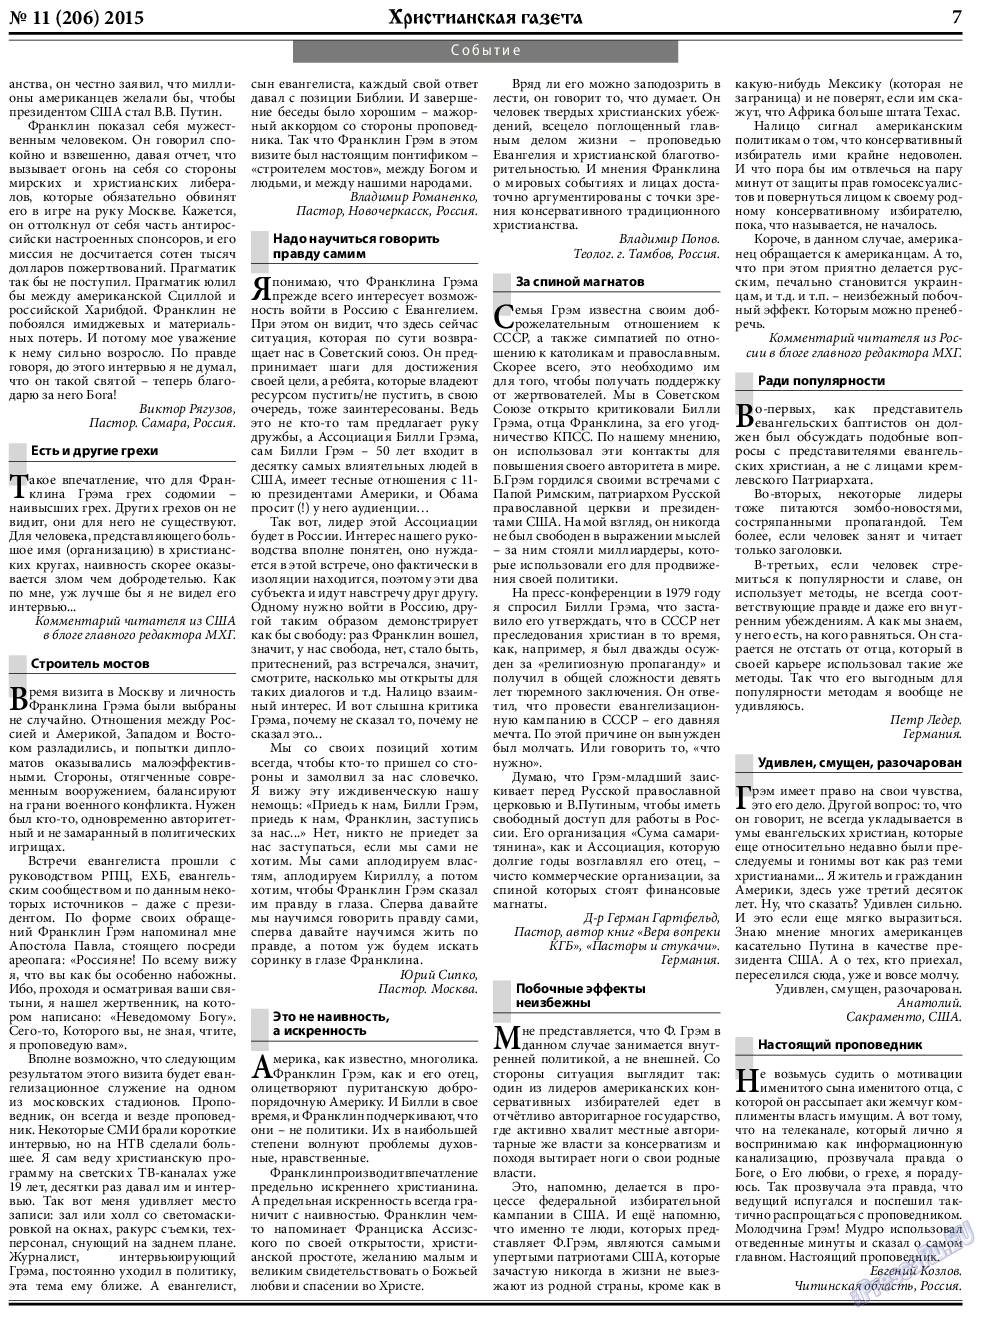 Христианская газета, газета. 2015 №11 стр.7